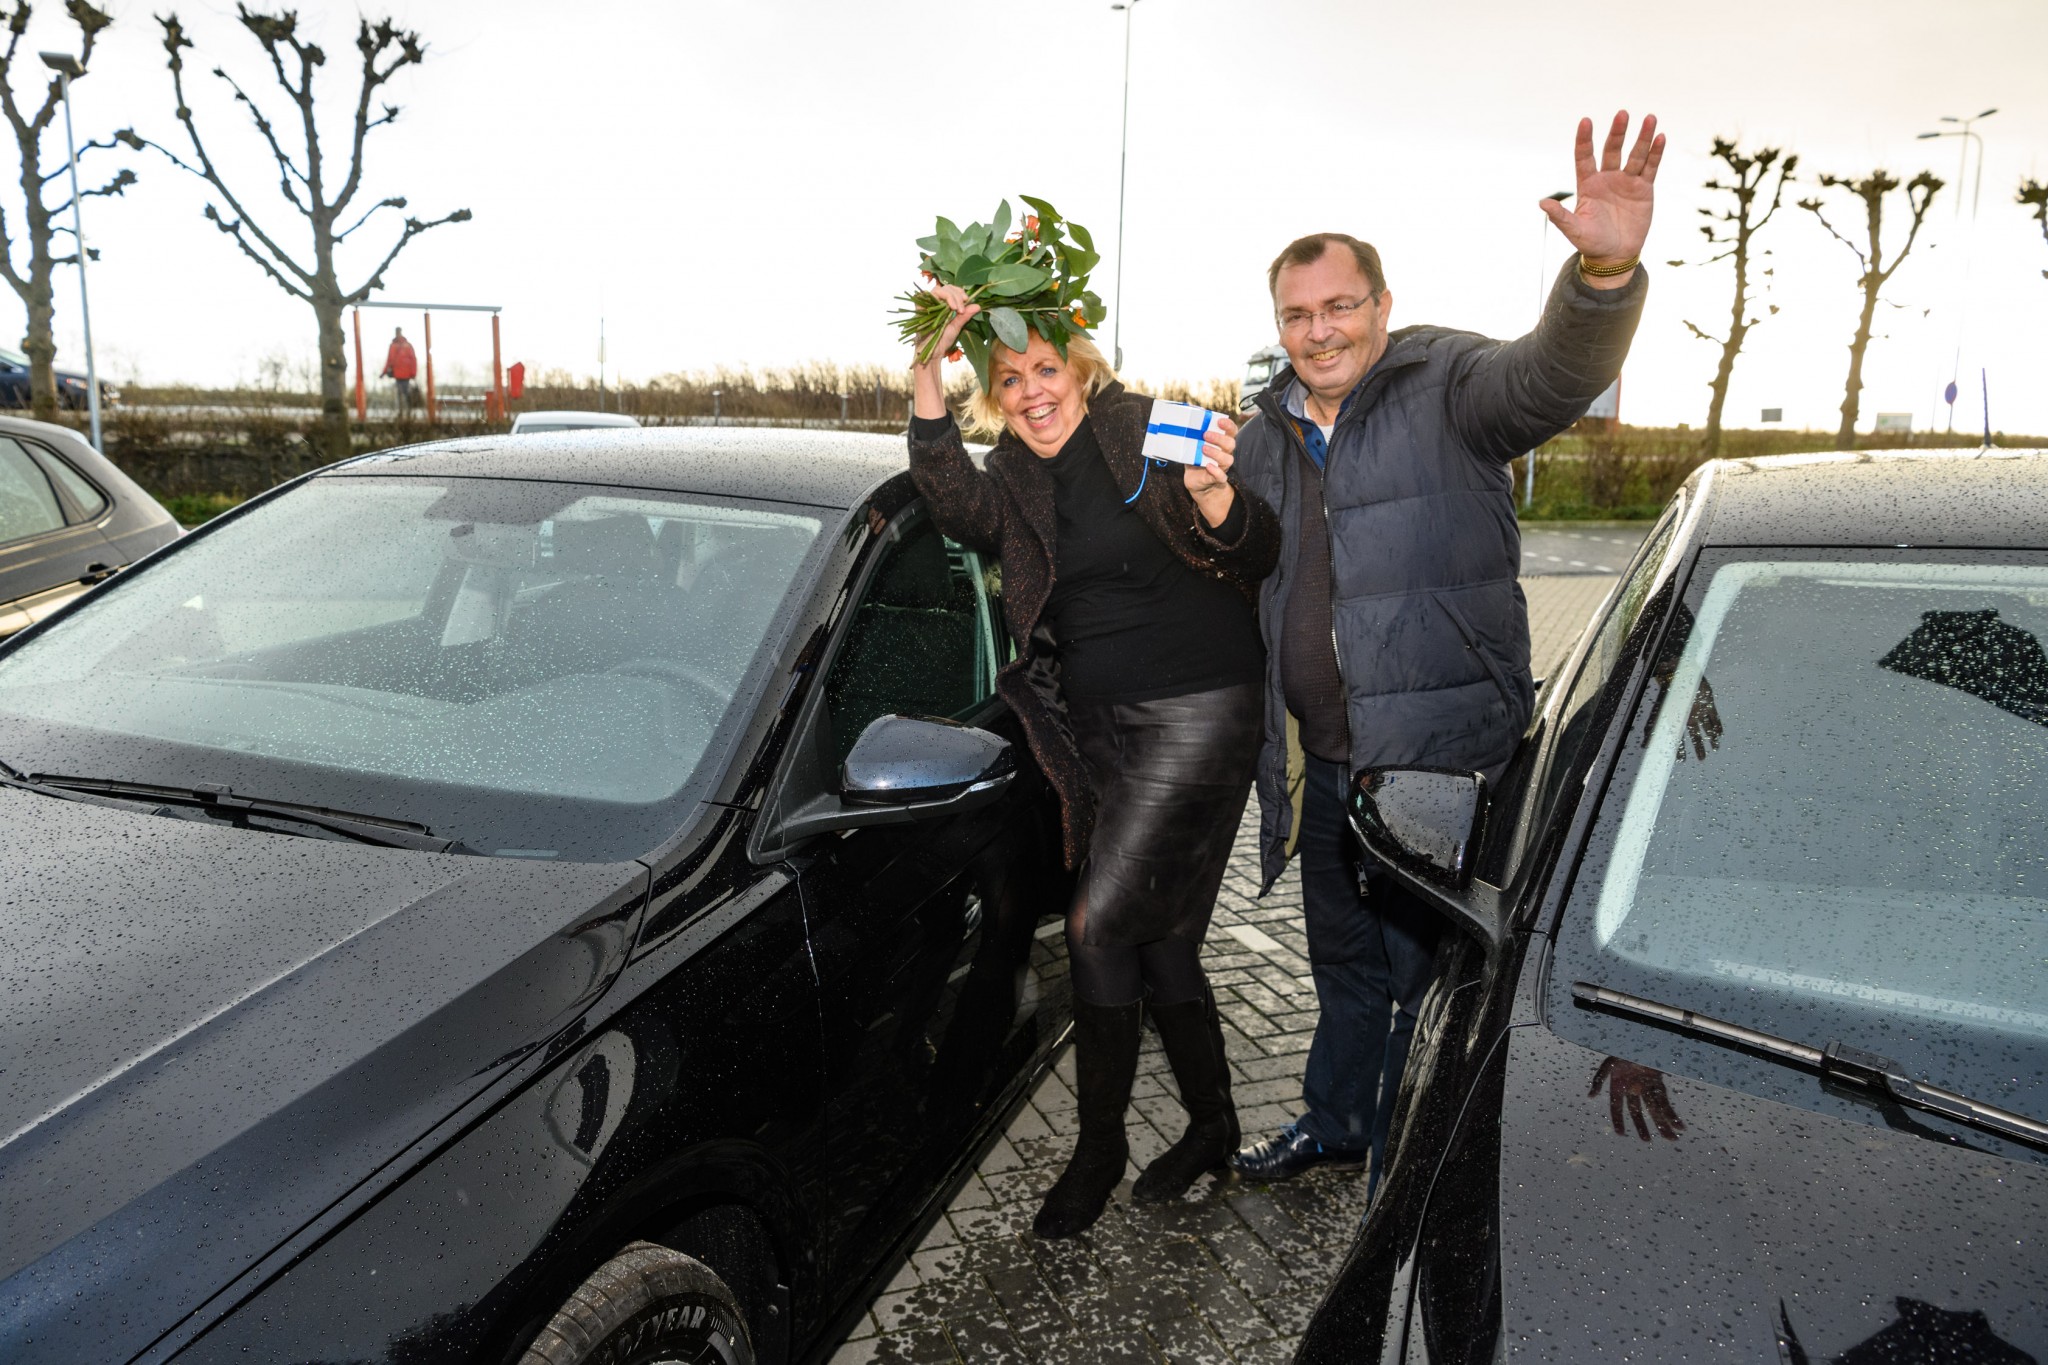 IJmuidens echtpaar wint auto